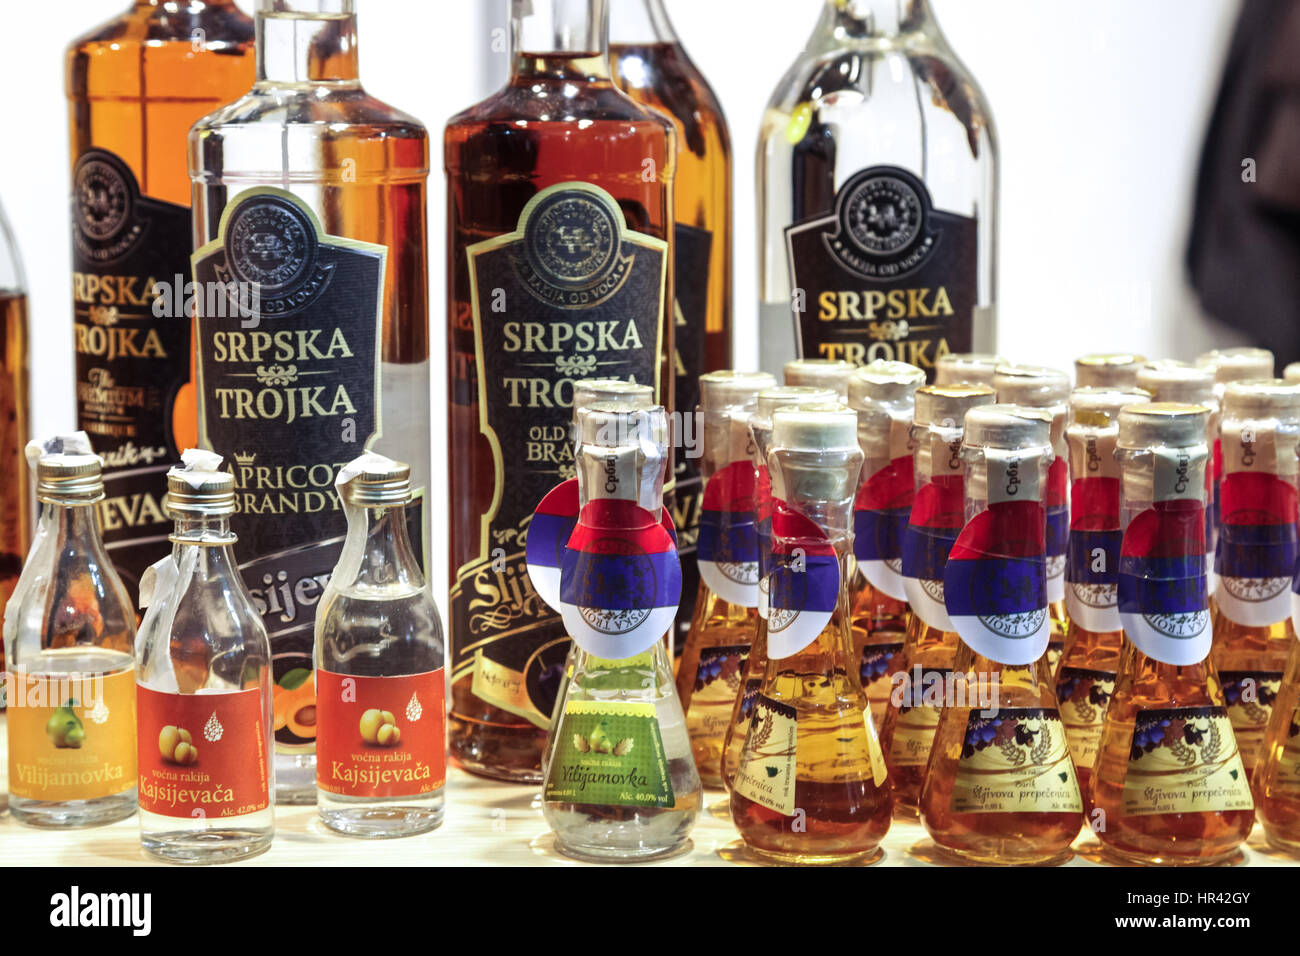 BELGRADE, SERBIE - 25 février 2017 : Divers bouteilles de rakija, de différentes tailles et de saveurs, de l'afficheur pendant le salon du tourisme de Belgrade 2017 pi Banque D'Images